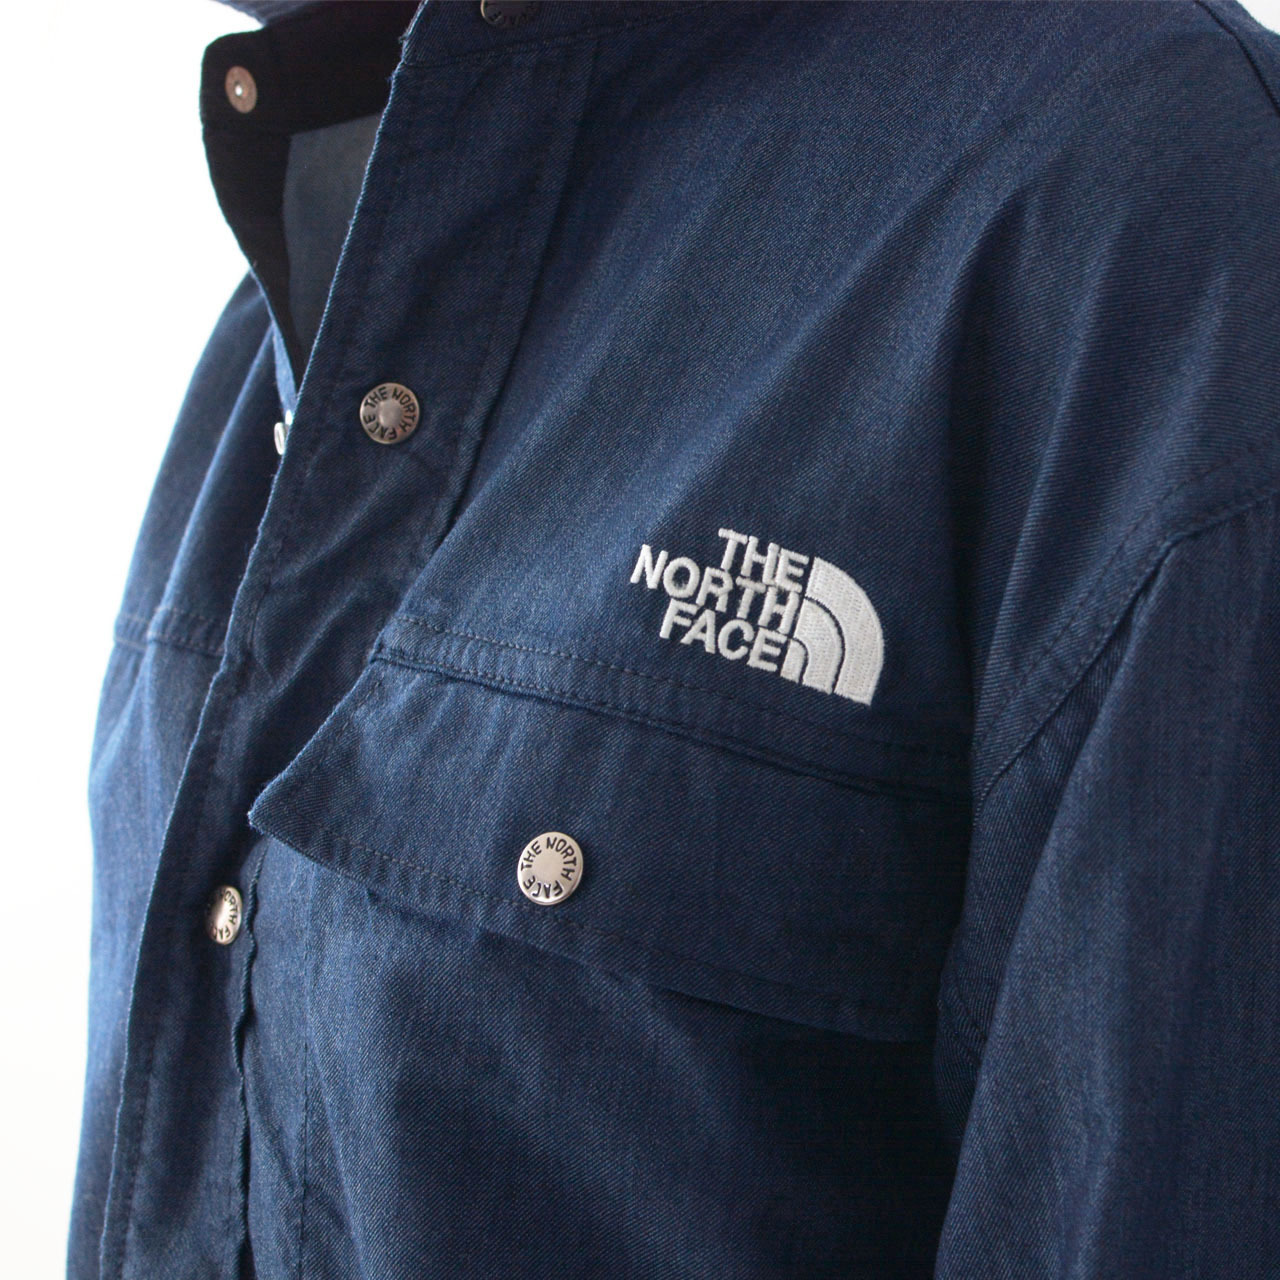 THE NORTH FACE [ザ ノースフェイス正規販売店] L/S Nylon Denim Nuptse Shirt [NR72130]_f0051306_15473338.jpg